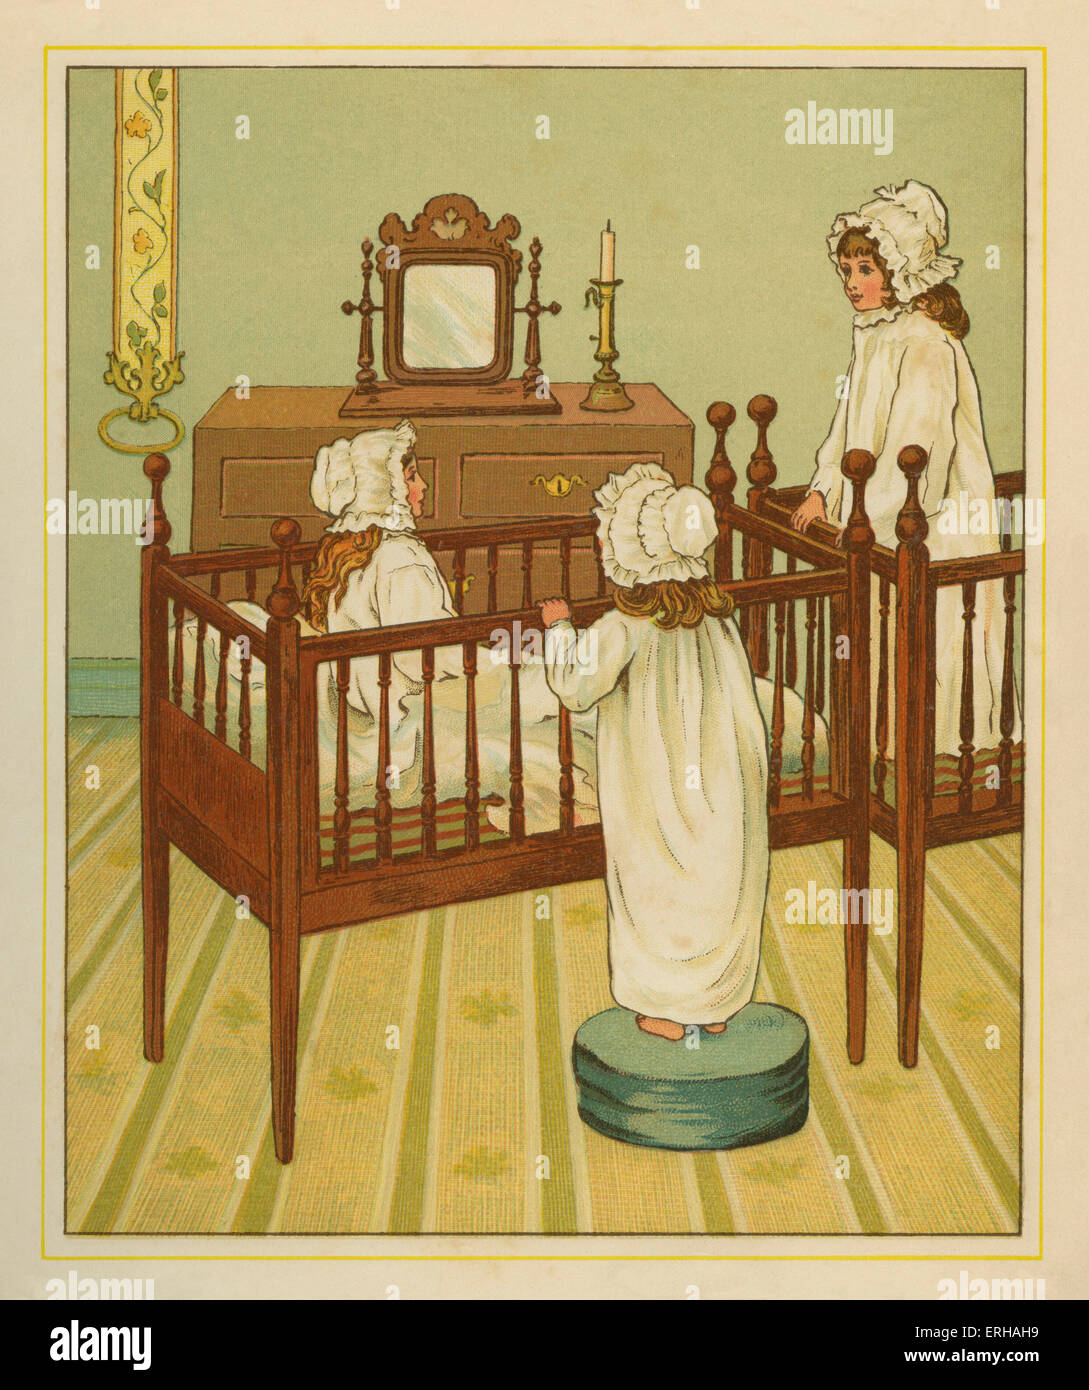 Drei viktorianischen Schwestern gekleidet für Bett, sitzen auf Kinderbetten. Illustration von j.g. Sowerby.1881 Stockfoto